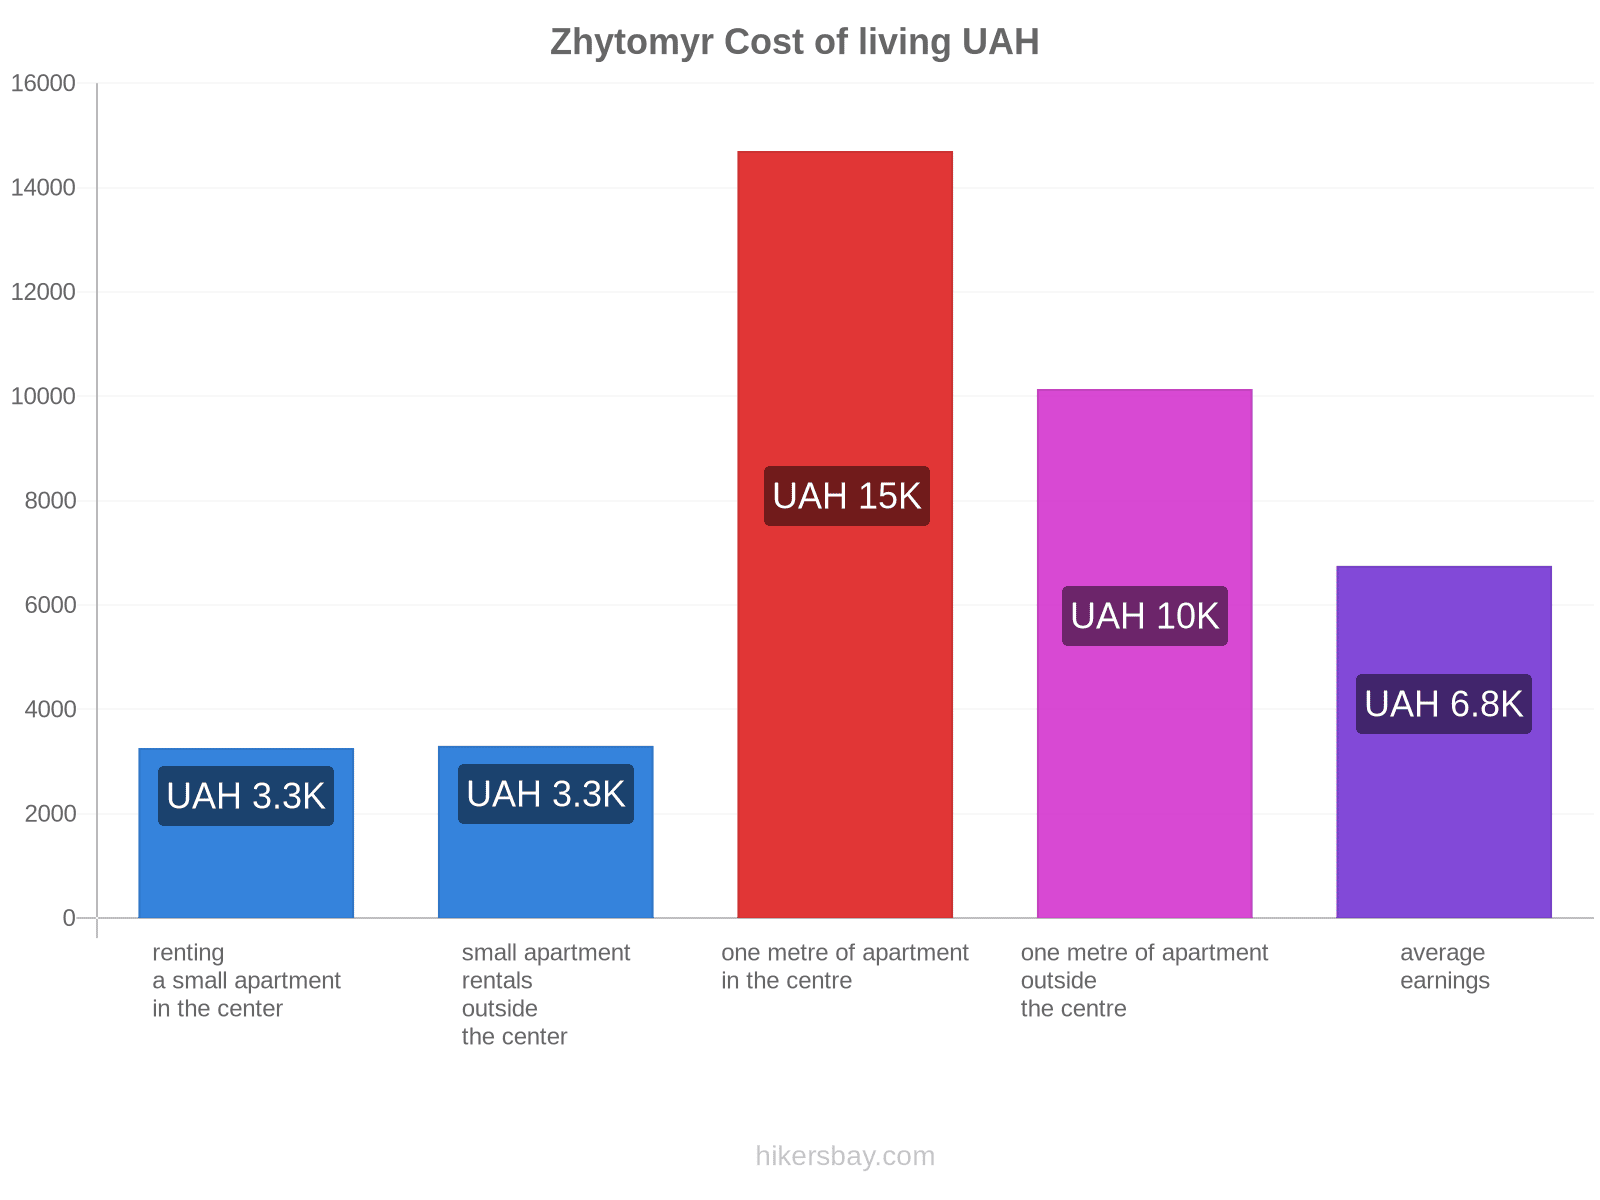 Zhytomyr cost of living hikersbay.com